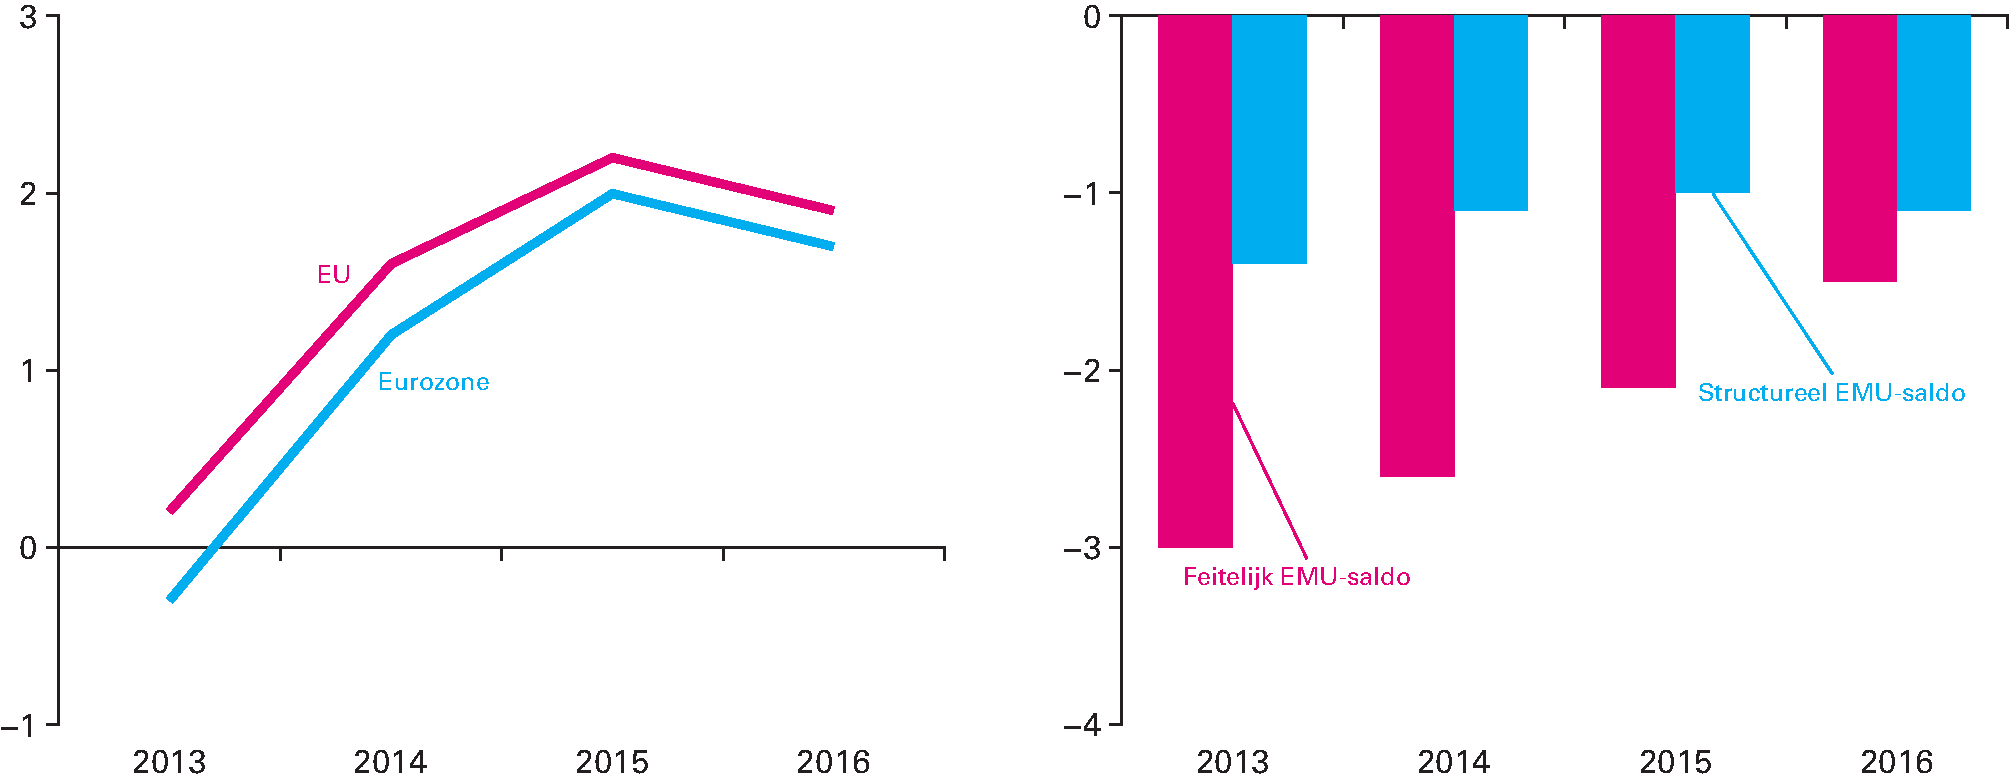 Figuur 1.3.1 en 1.3.2. Reële bbp-groei (procent per jaar) en EMU-saldo eurozone (procent van het bbp)